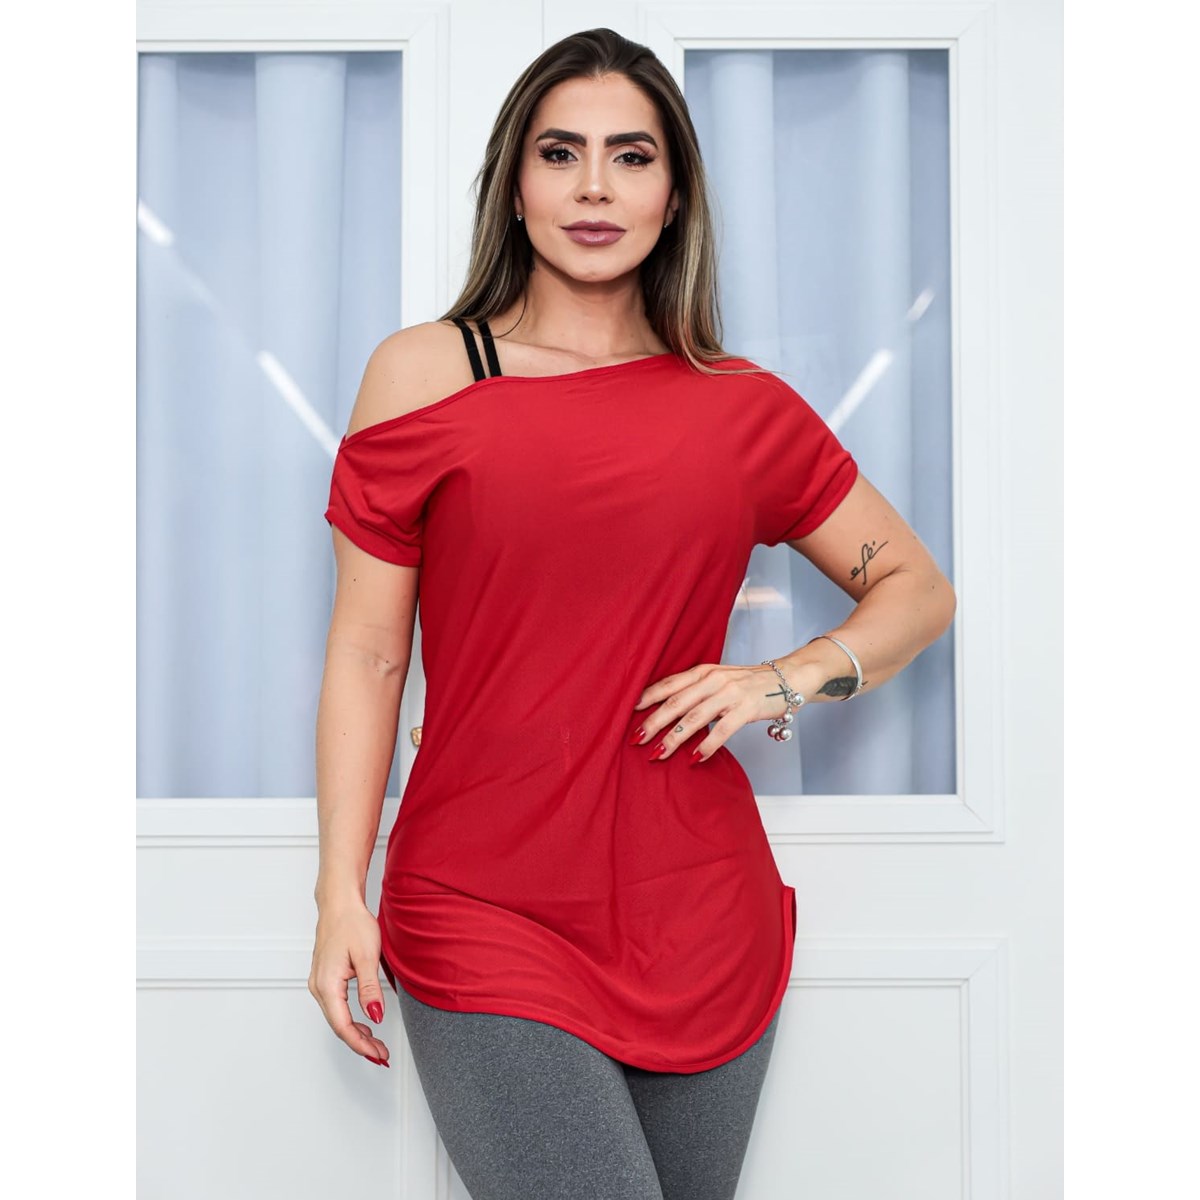 Blusa Feminina Dry Fit Vermelha | Ref: 3.3.2434-11